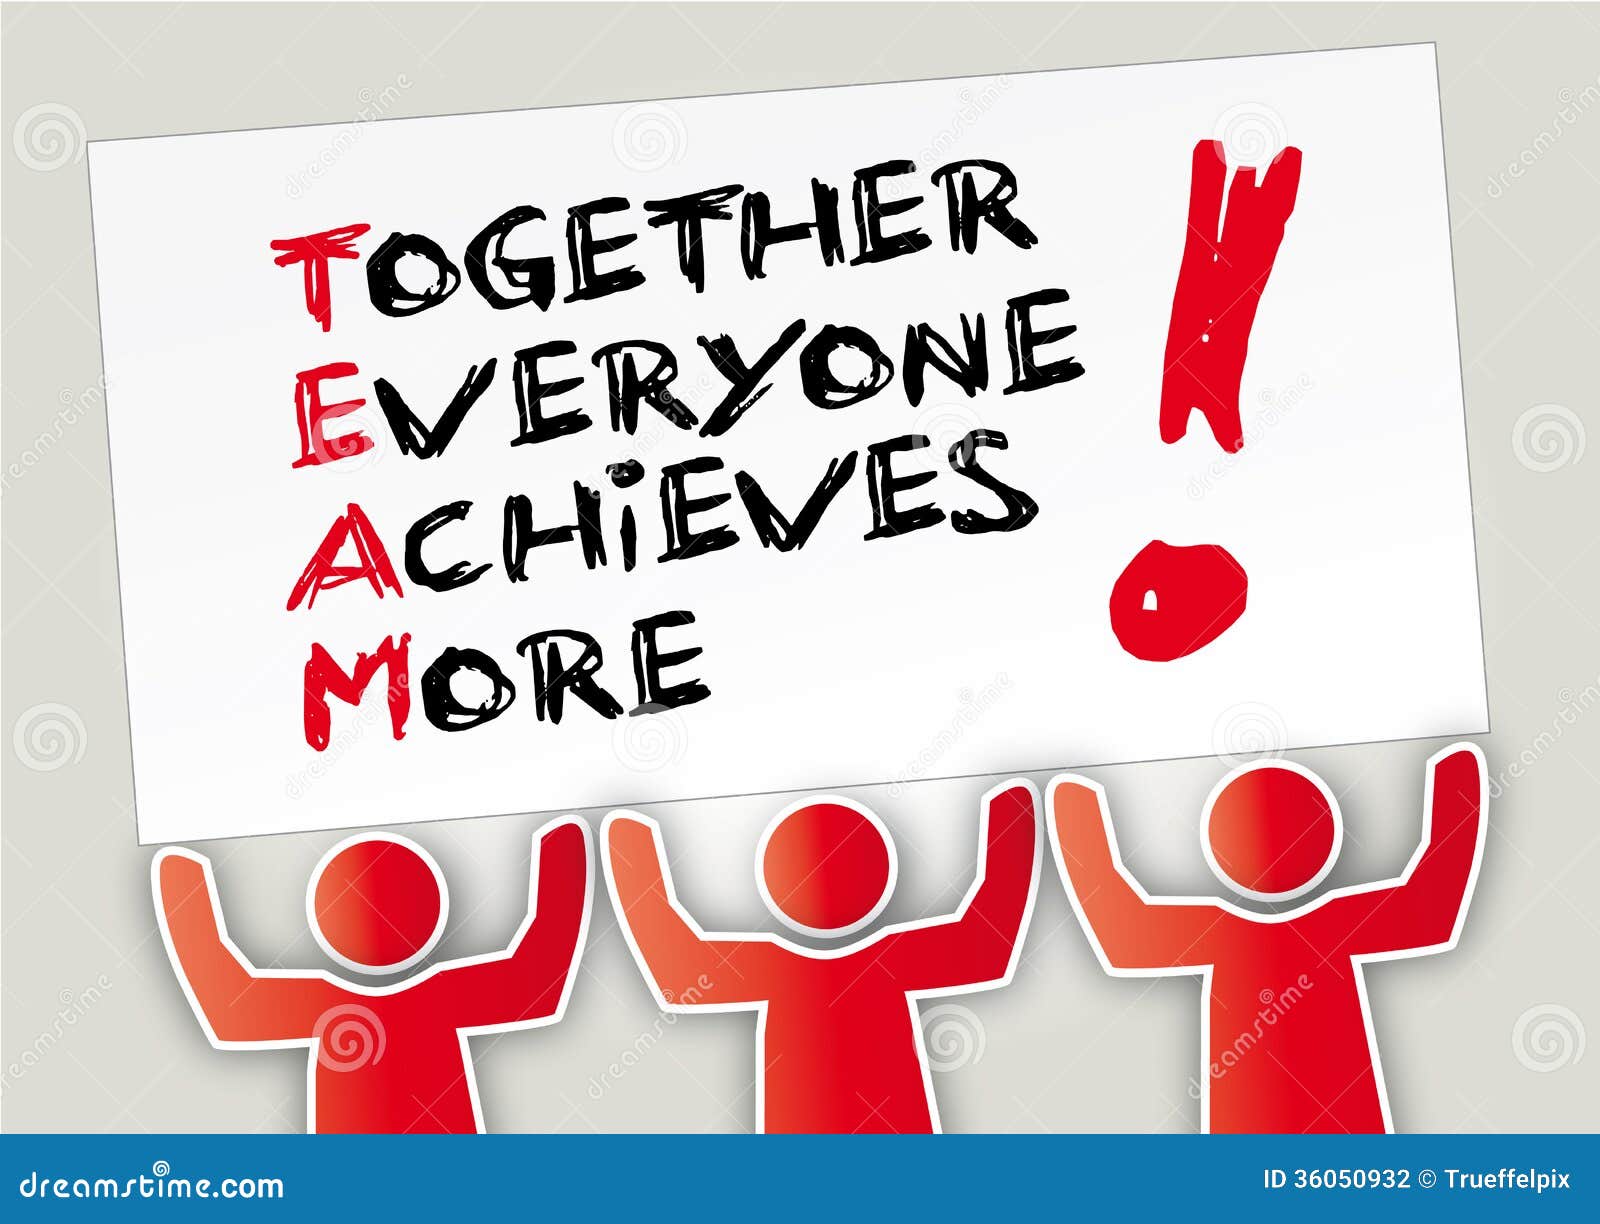 Teamwork Together stock illustration. Image of motivation - 36050932